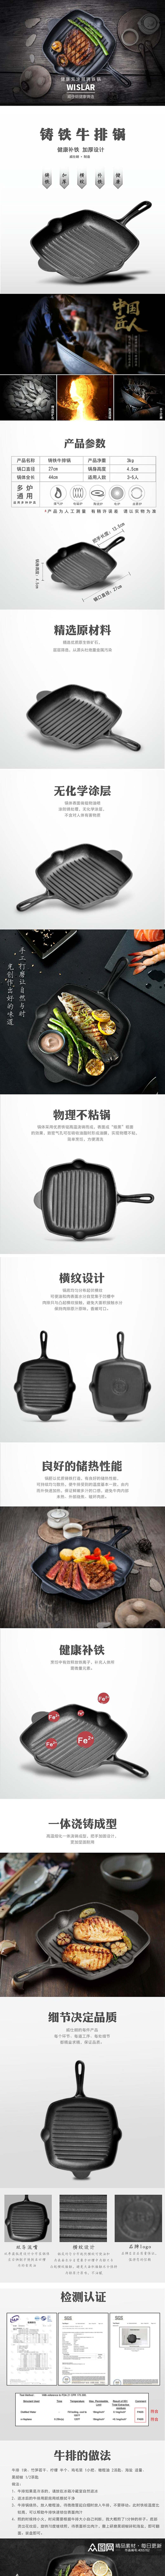 铸铁牛排锅铁锅厨具手机版详情页素材